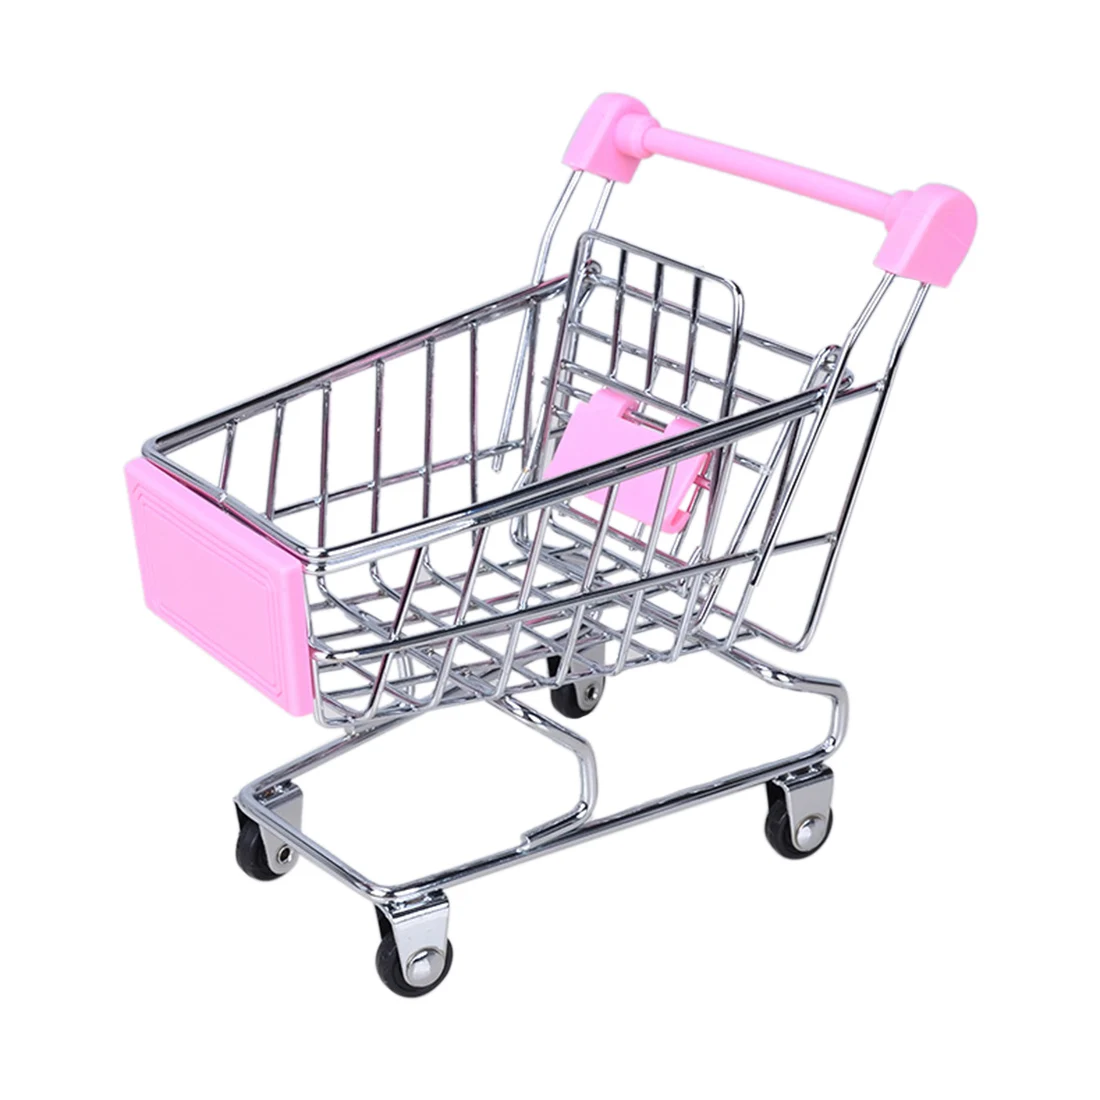 Мини-тележки для шоппинга игрушечная коляска имитация миниатюрная корзина для хранения ролевые игры игрушки ручная тележка игрушка детская тележка для детей